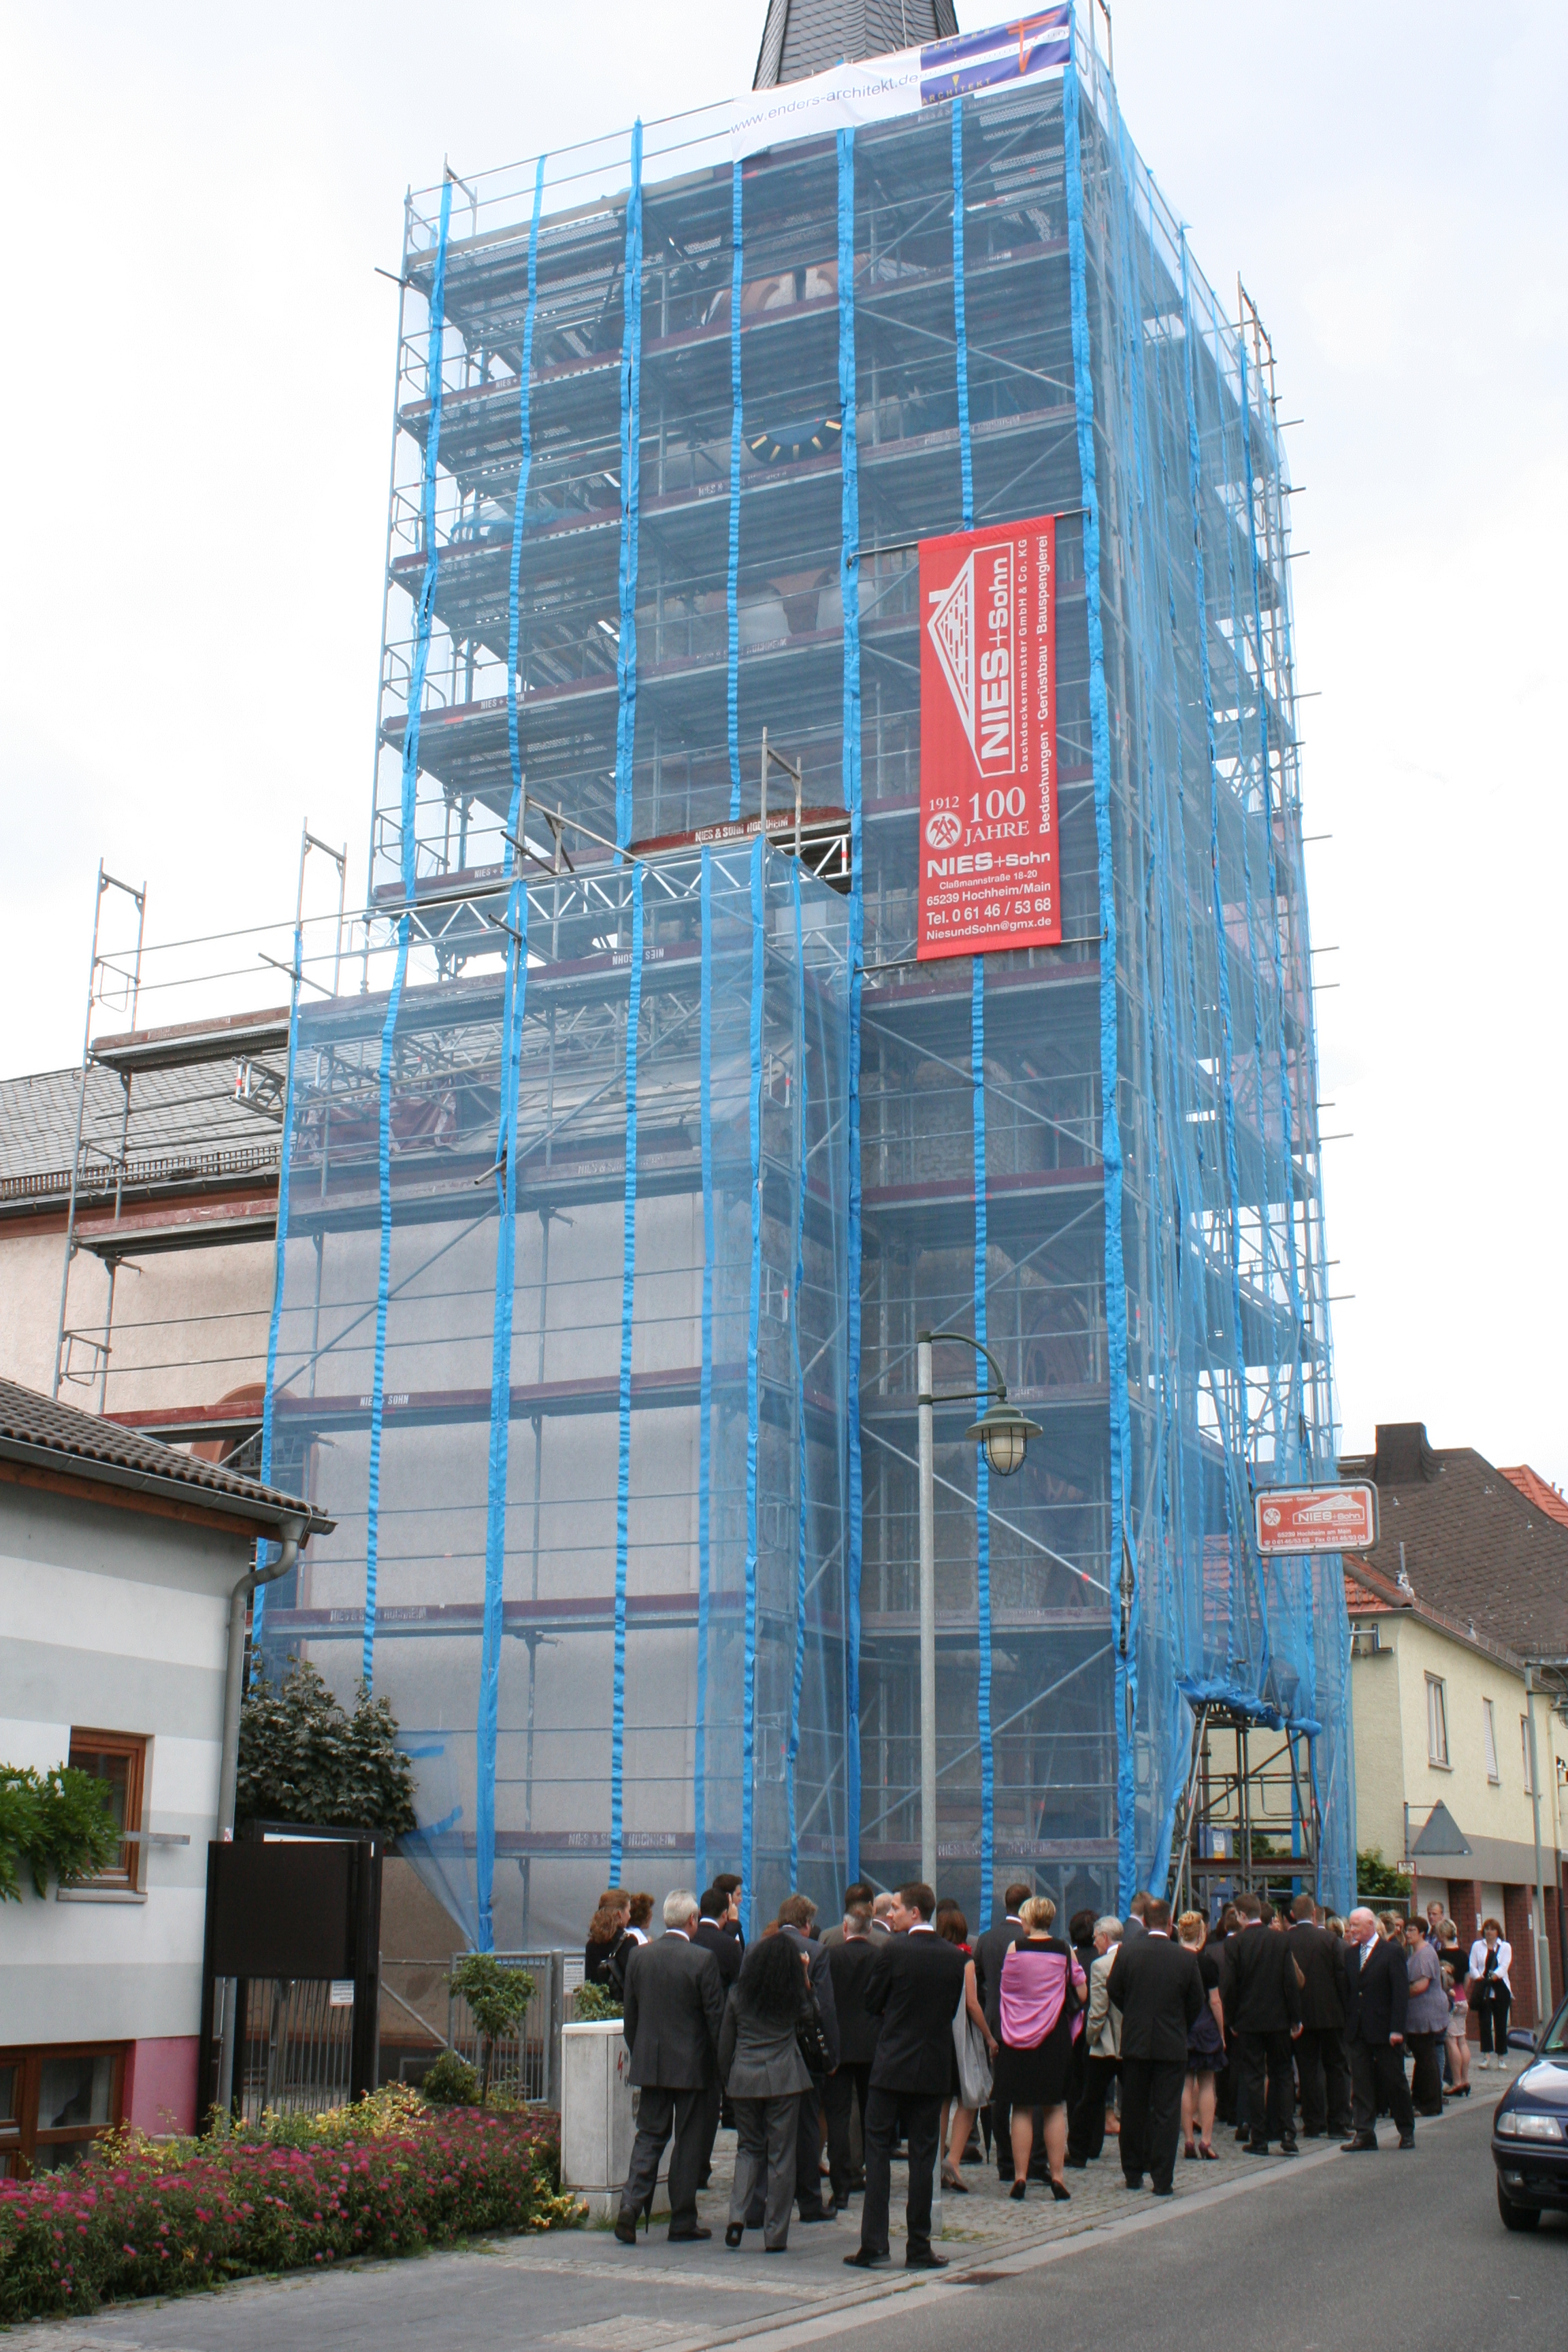 Sanierung des Kirchturm 2011